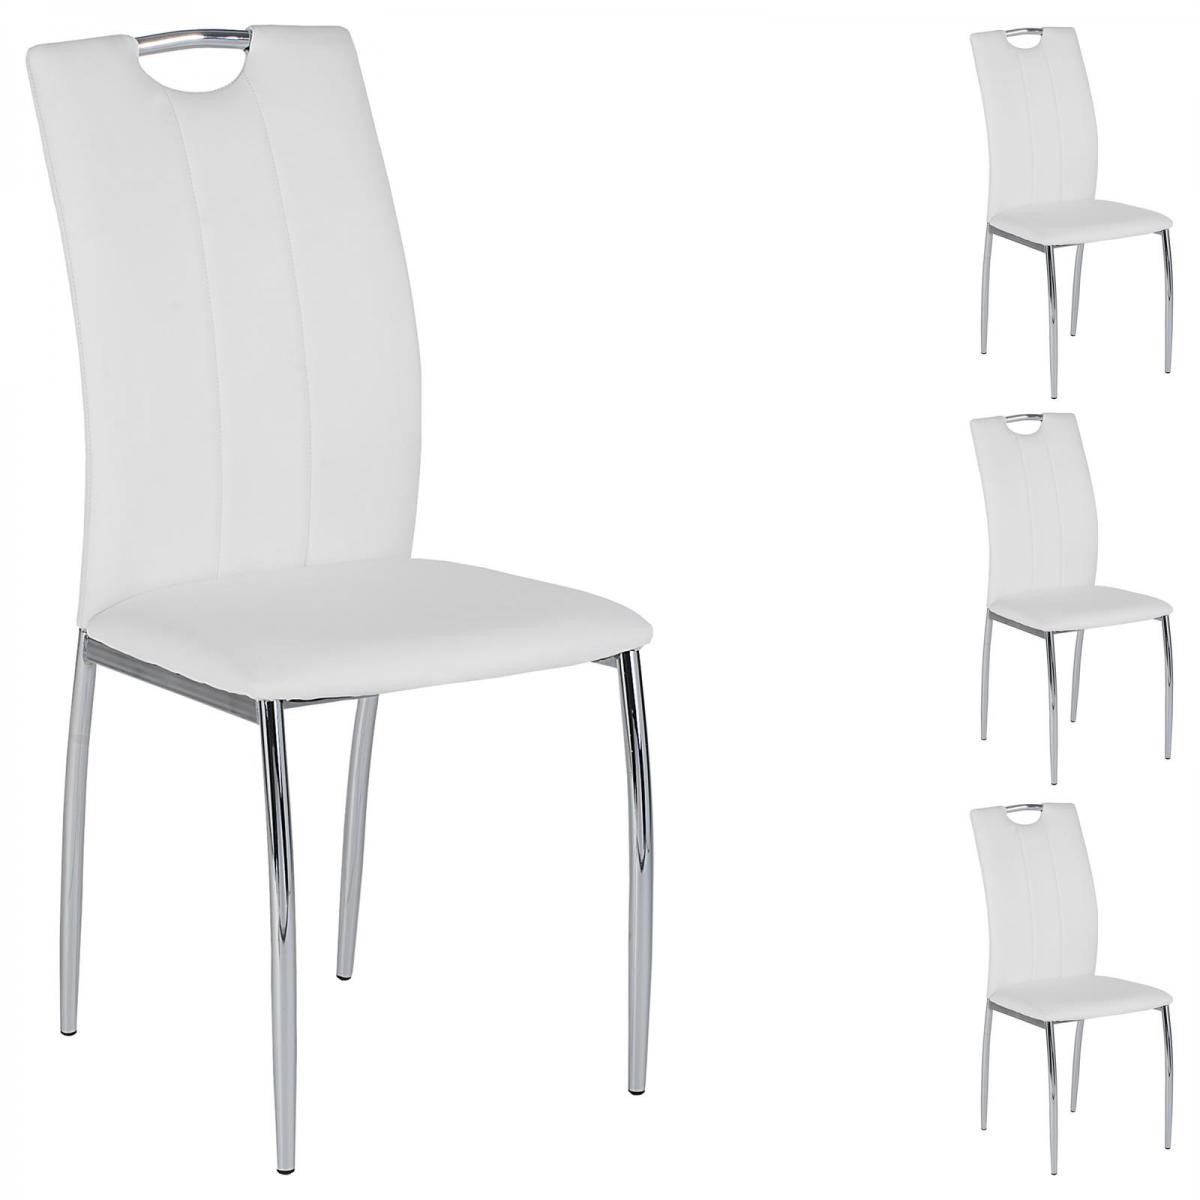 Idimex - Lot de 4 chaises APOLLO, en synthétique blanc - Chaises